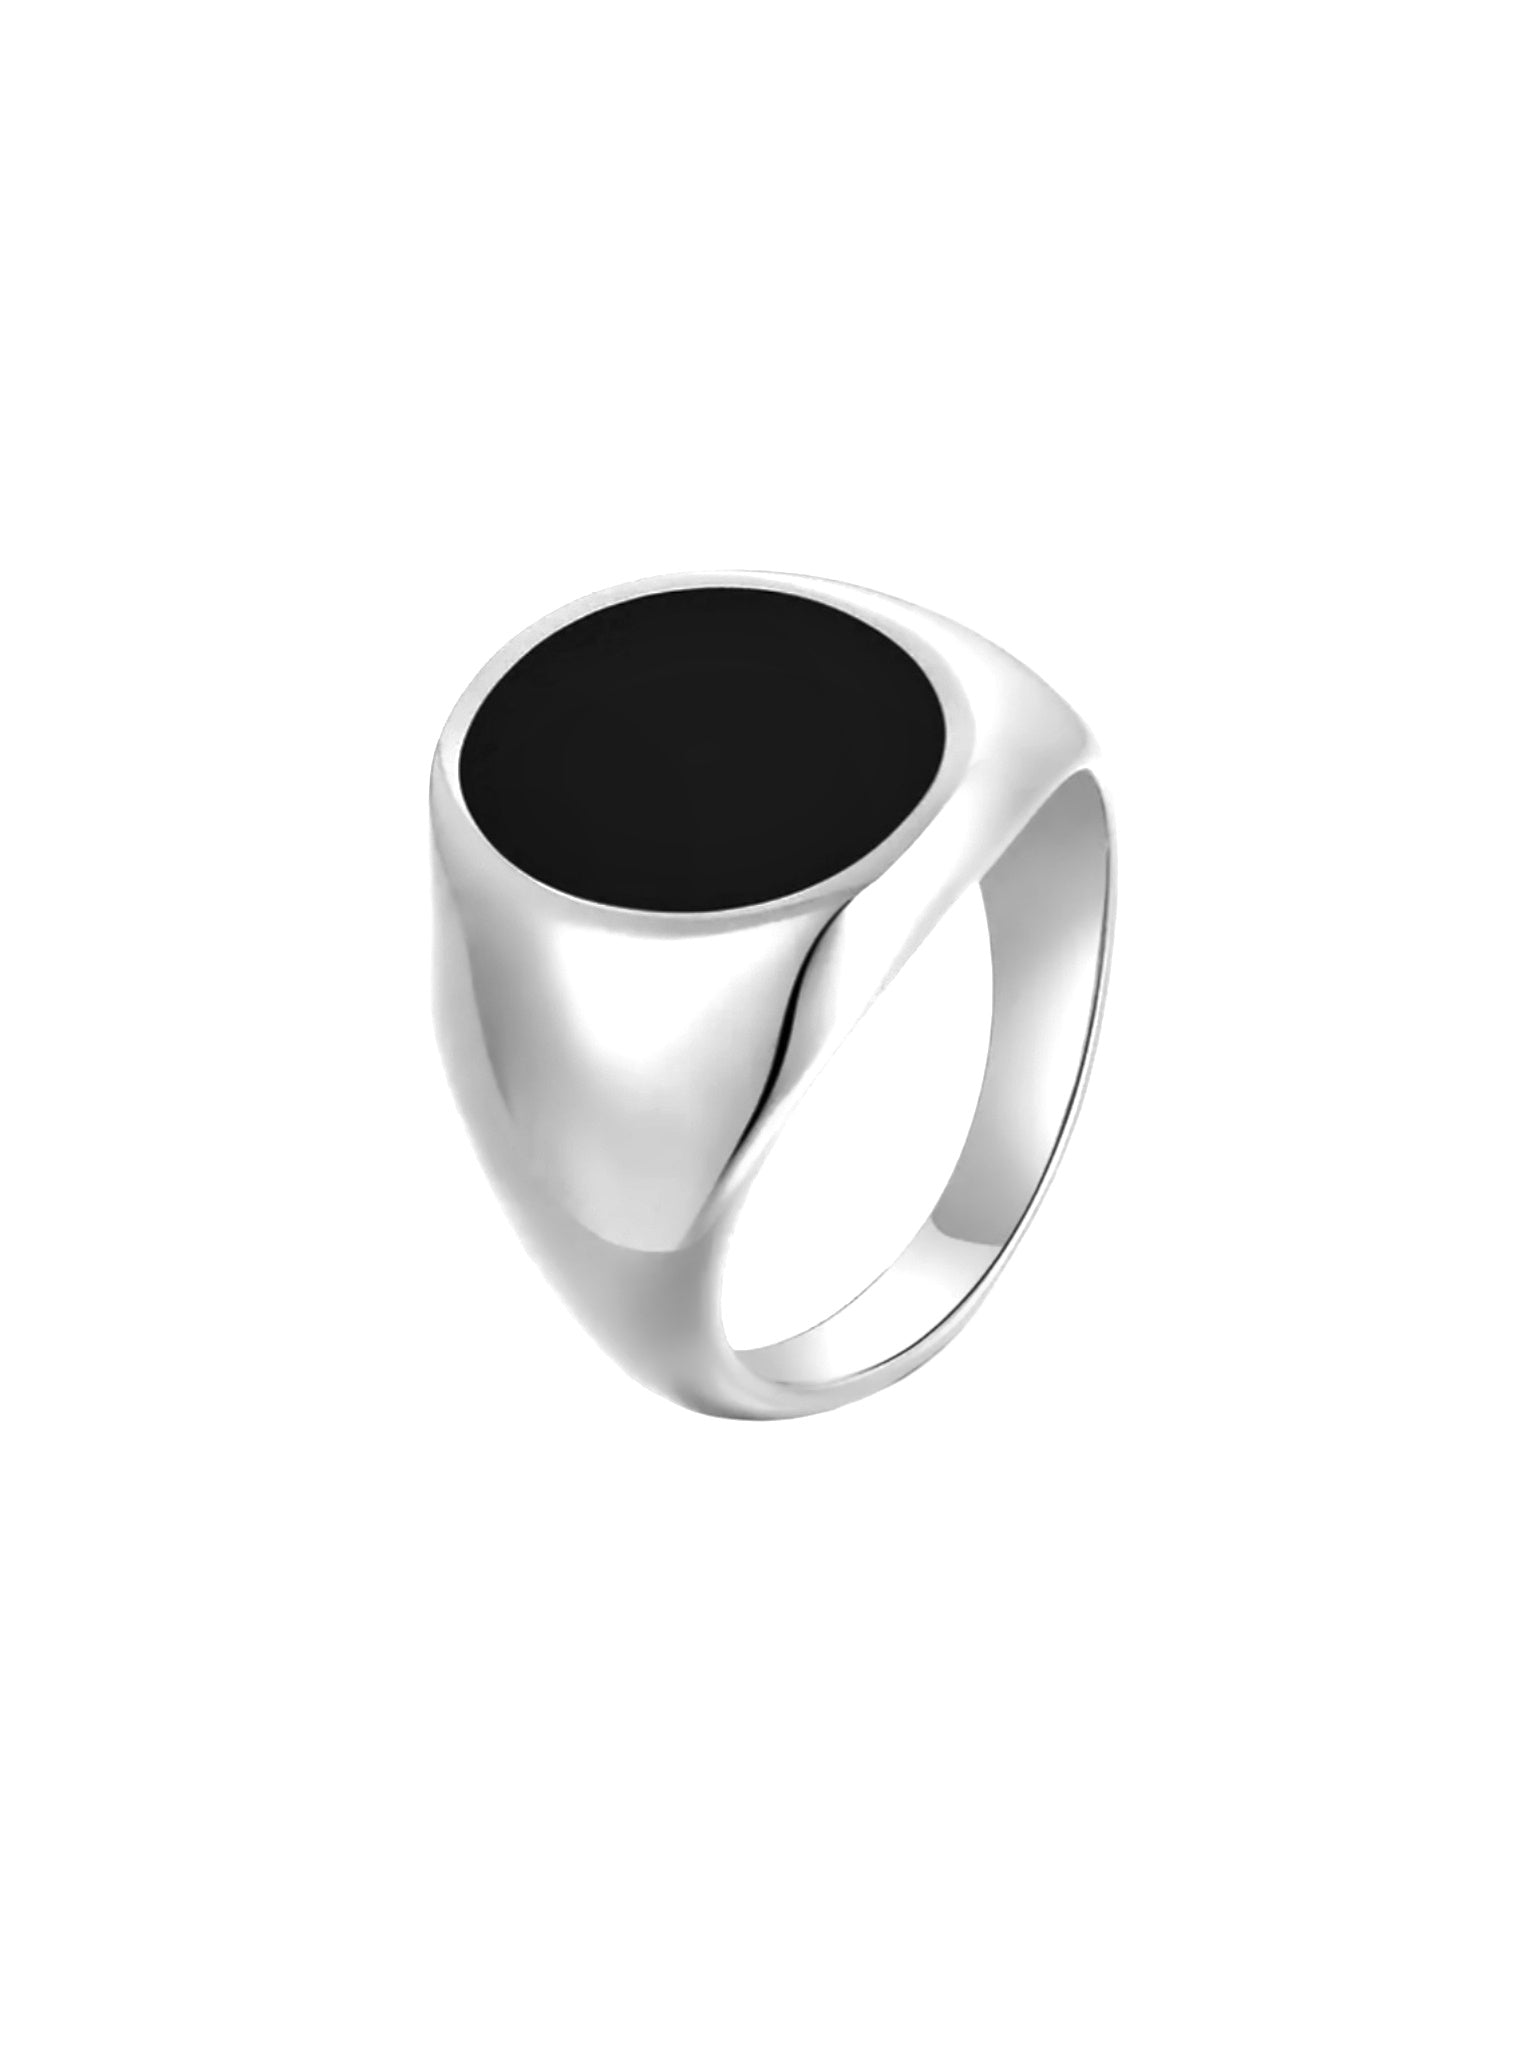 Lymaja Black Plate Siegel Ring in Silber aus 316L Edelstahl